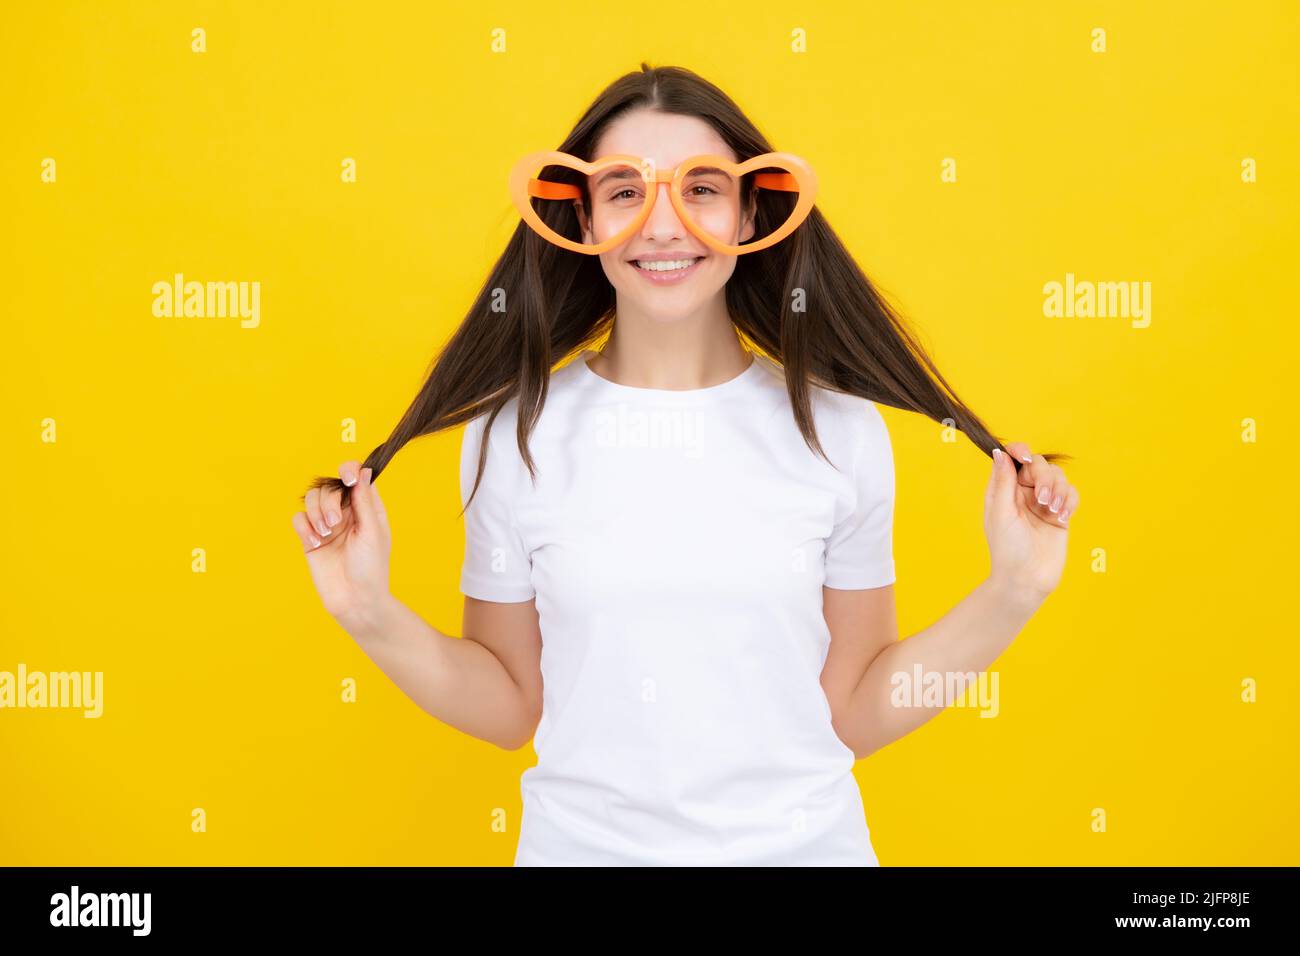 Porträt einer schönen Frau mit lustigen Gläsern. Feiern und feiern. Mädchen mit Spaß, Porträt auf gelbem Hintergrund. Stockfoto